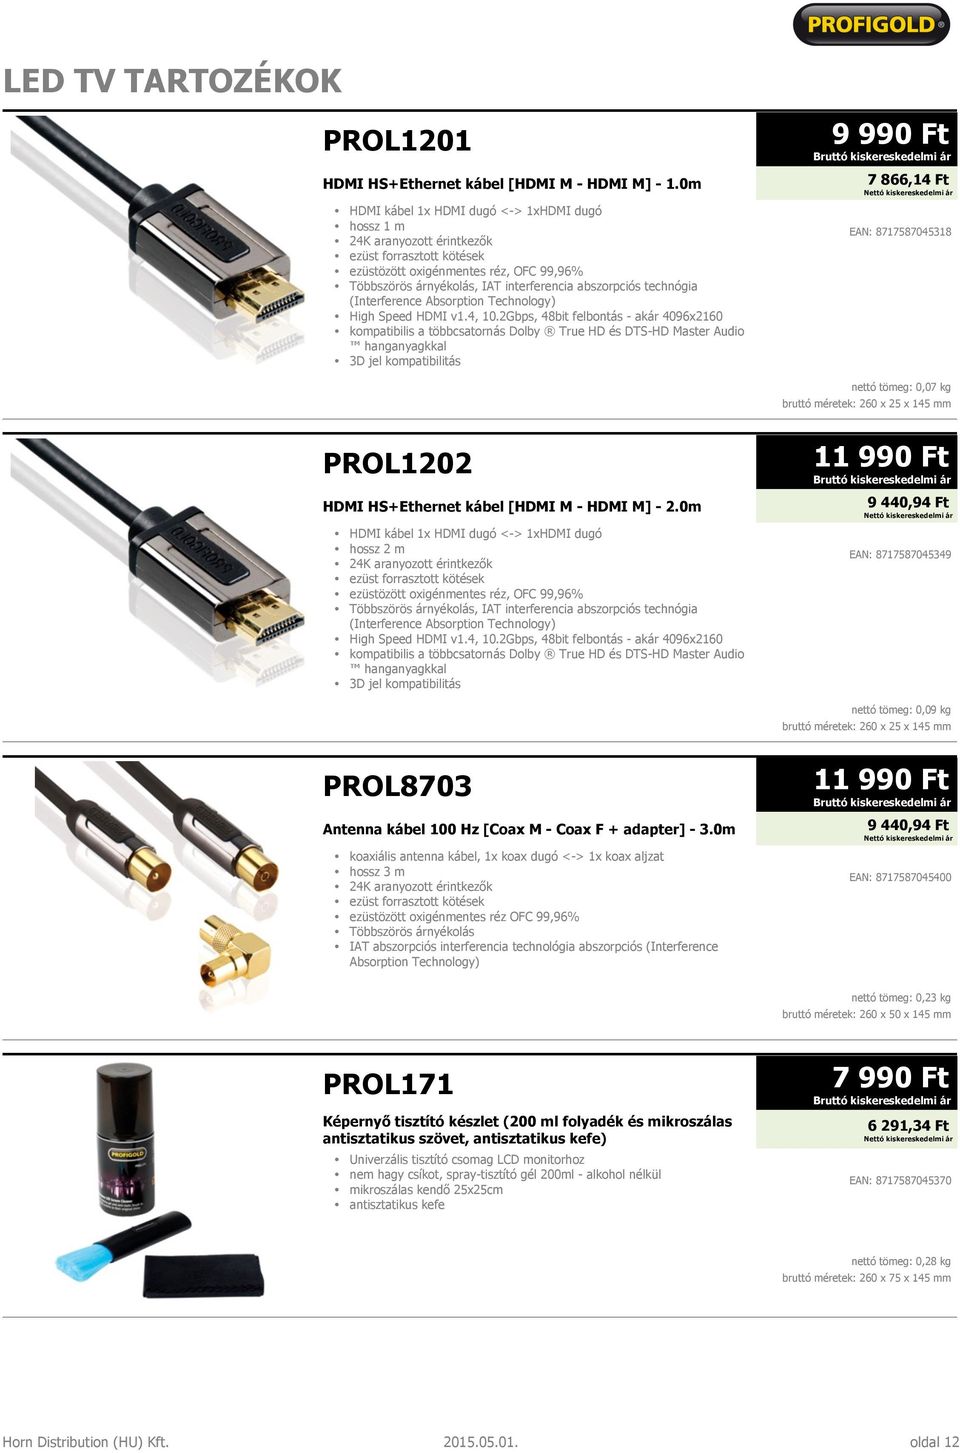 2Gbps, 48bit felbontás - akár 4096x2160 hanganyagkkal 3D jel kompatibilitás 9 990 Ft 7 866,14 Ft EAN: 8717587045318 nettó tömeg: 0,07 kg PROL1202 HDMI HS+Ethernet kábel [HDMI M - HDMI M] - 2.